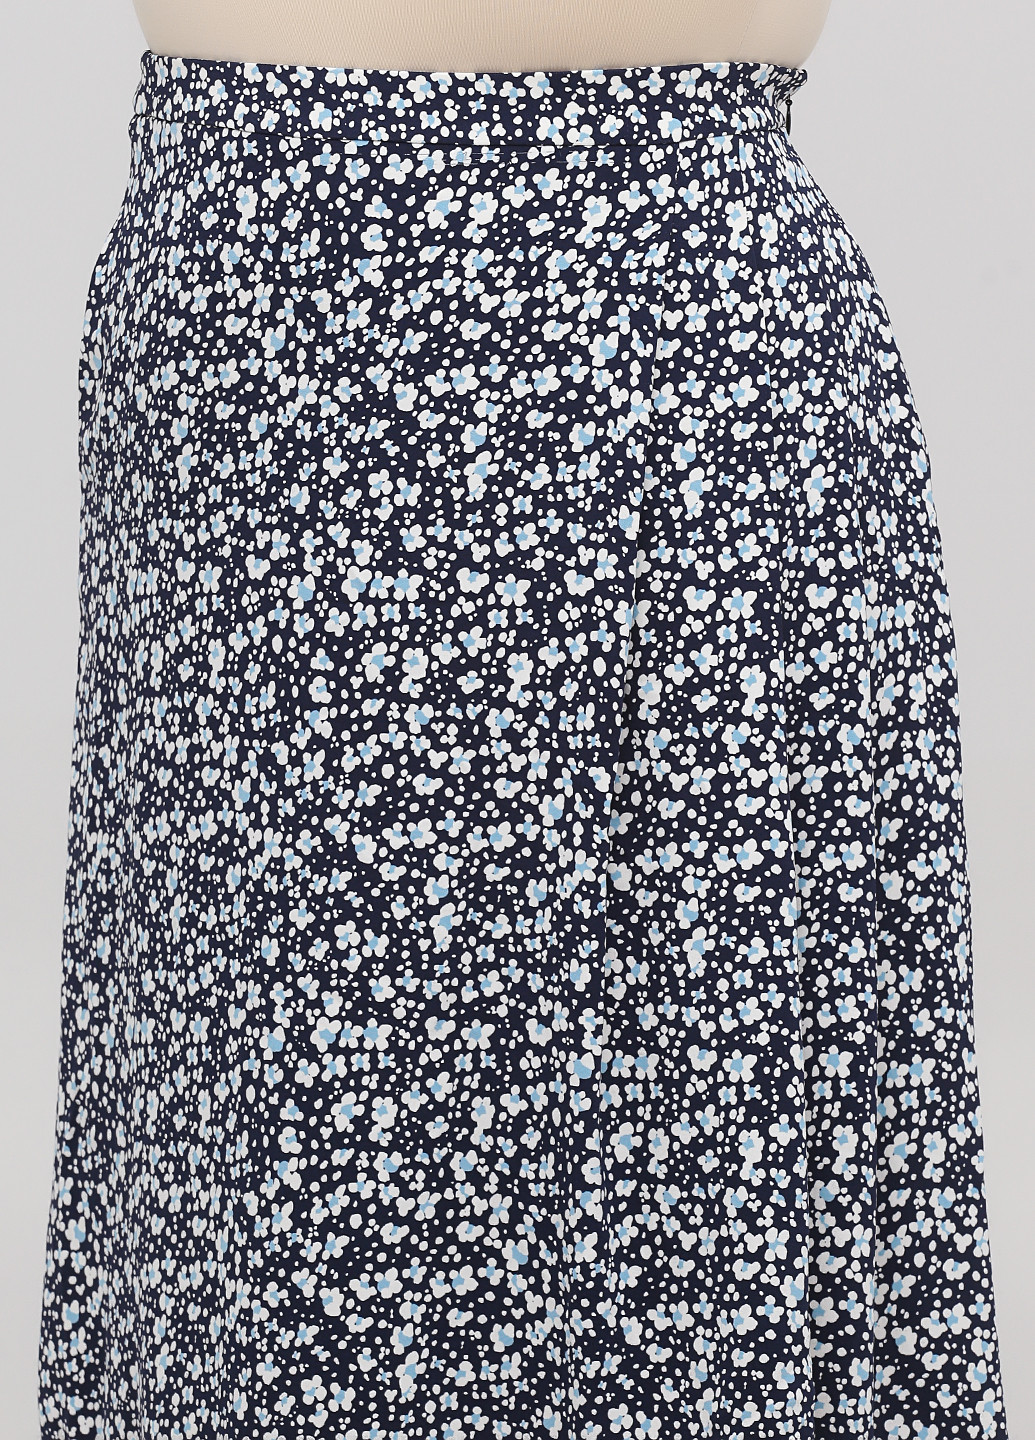 Темно-синяя кэжуал цветочной расцветки юбка Boden а-силуэта (трапеция)